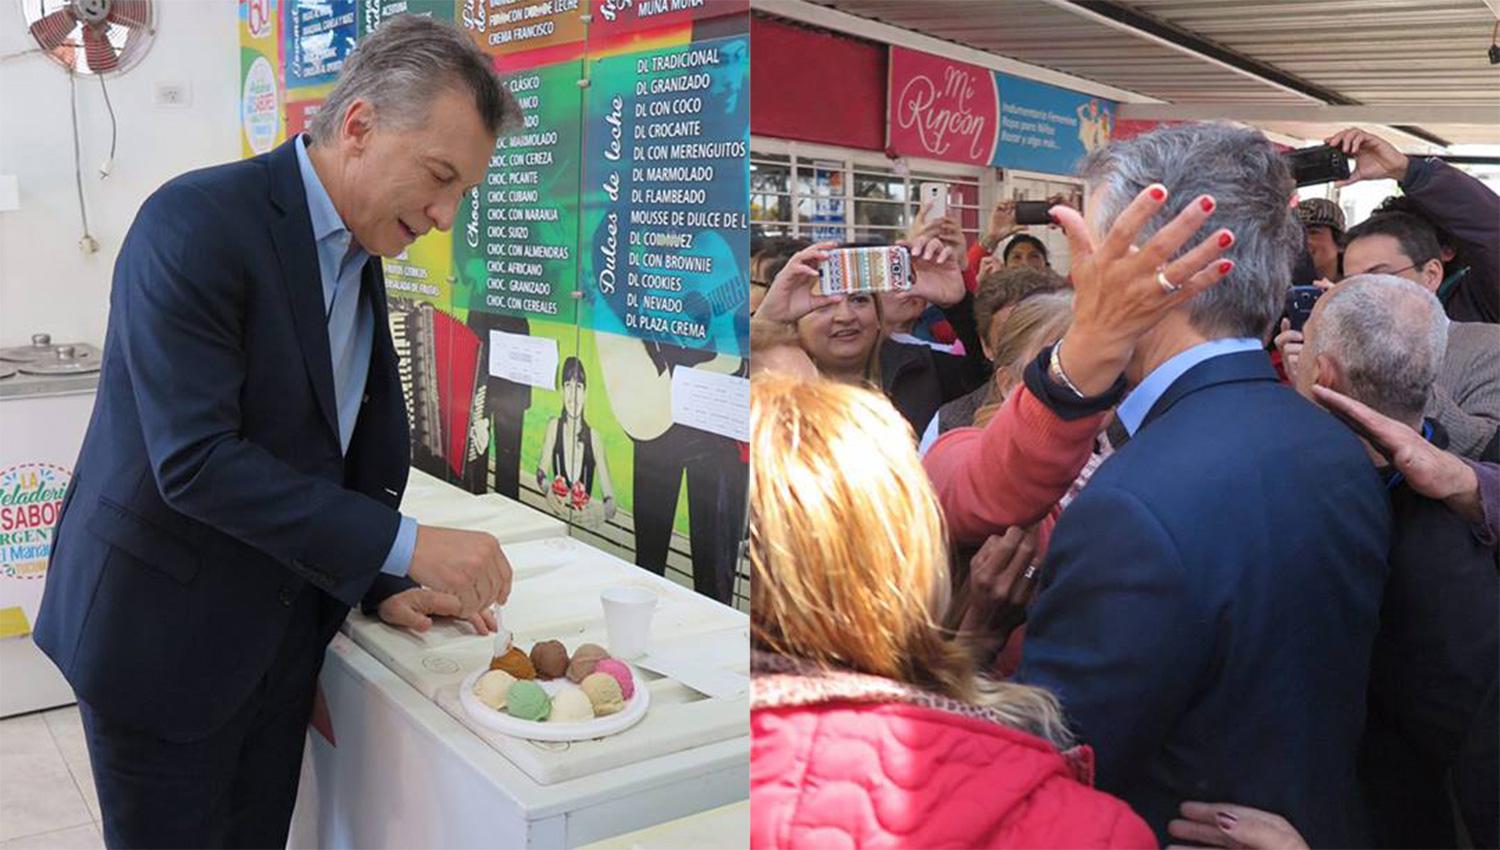 El Presidente probó los curiosos gustos de la heladería tucumana. FOTO TOMADA DE WWW.FACEBOOK.COM/MAURICIOMACRI